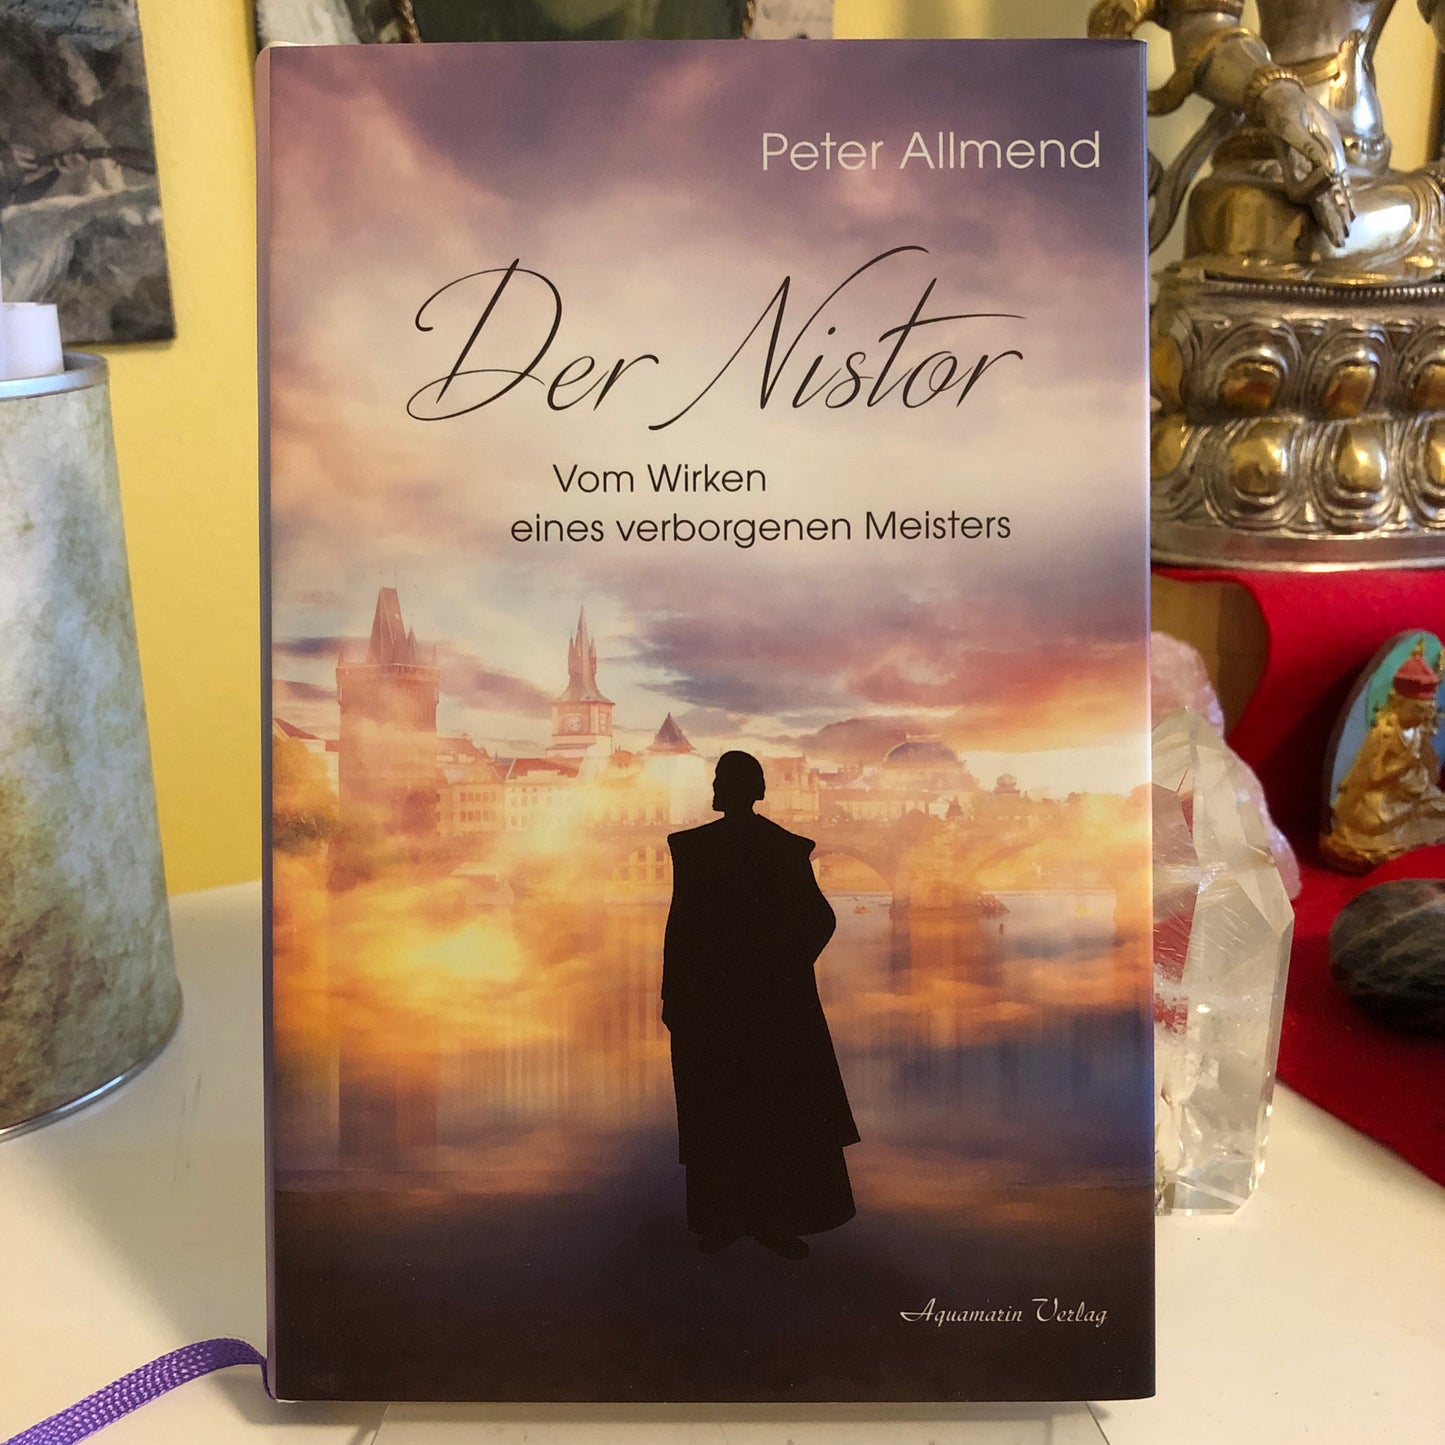 Der Nistor - Peter Allmend